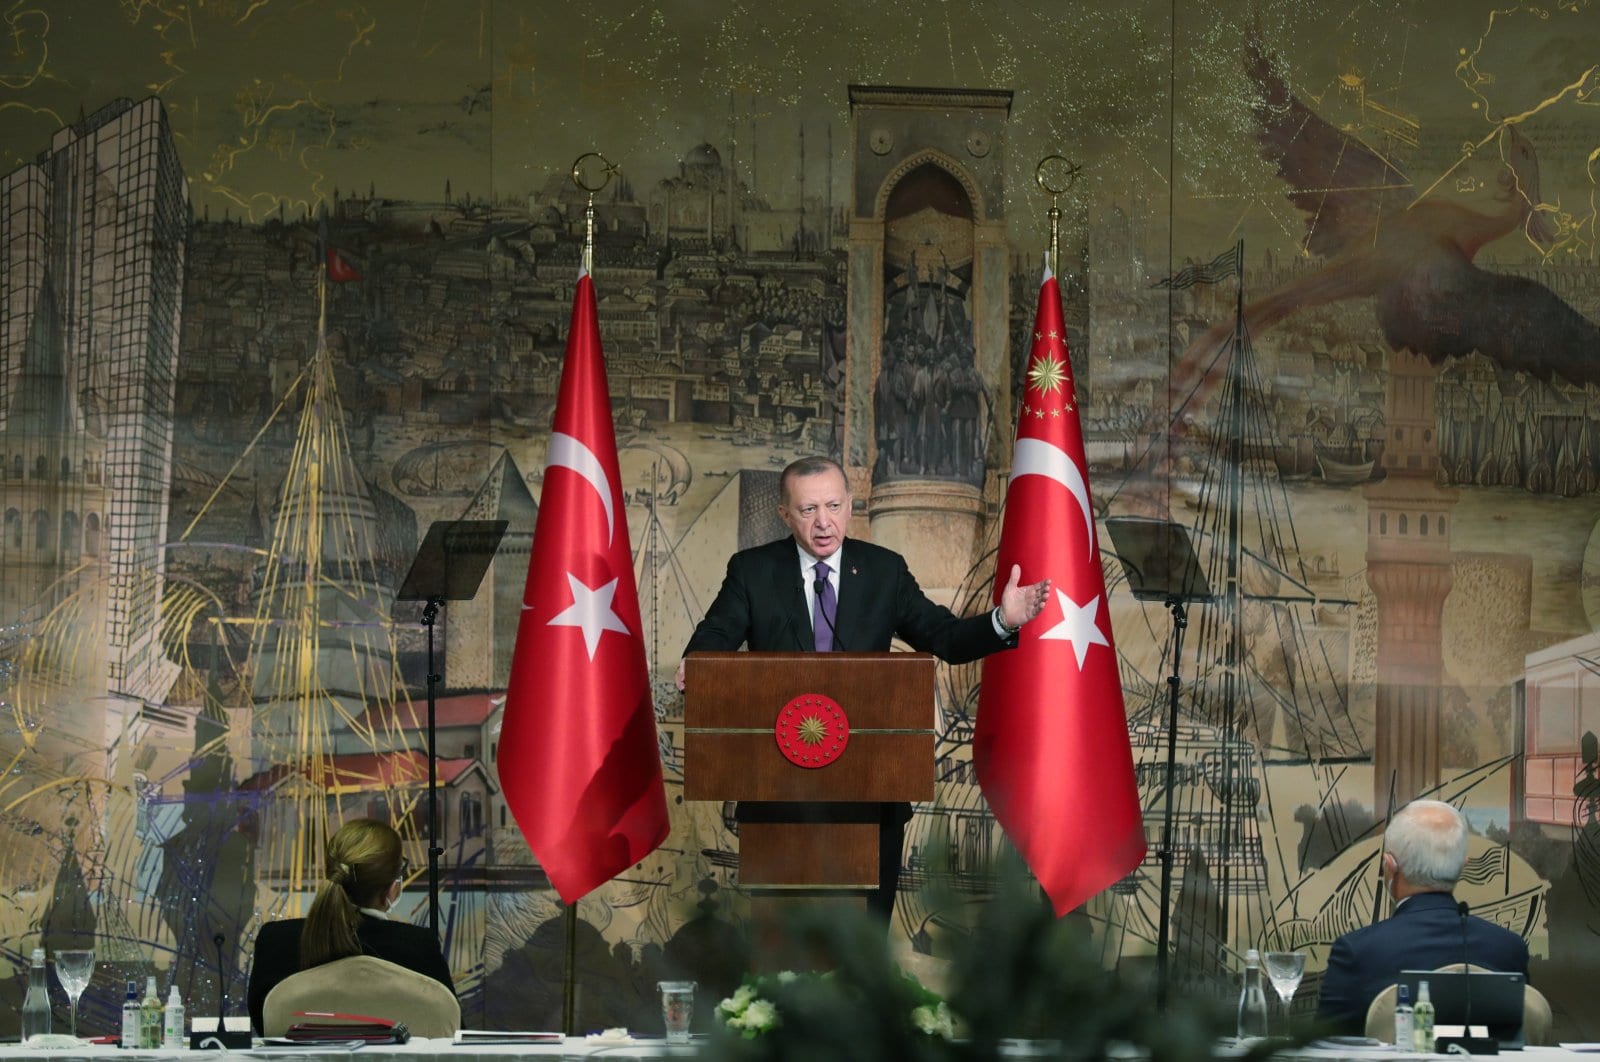 Турция завершает интенсивную подготовку программы реформ в области экономики и права